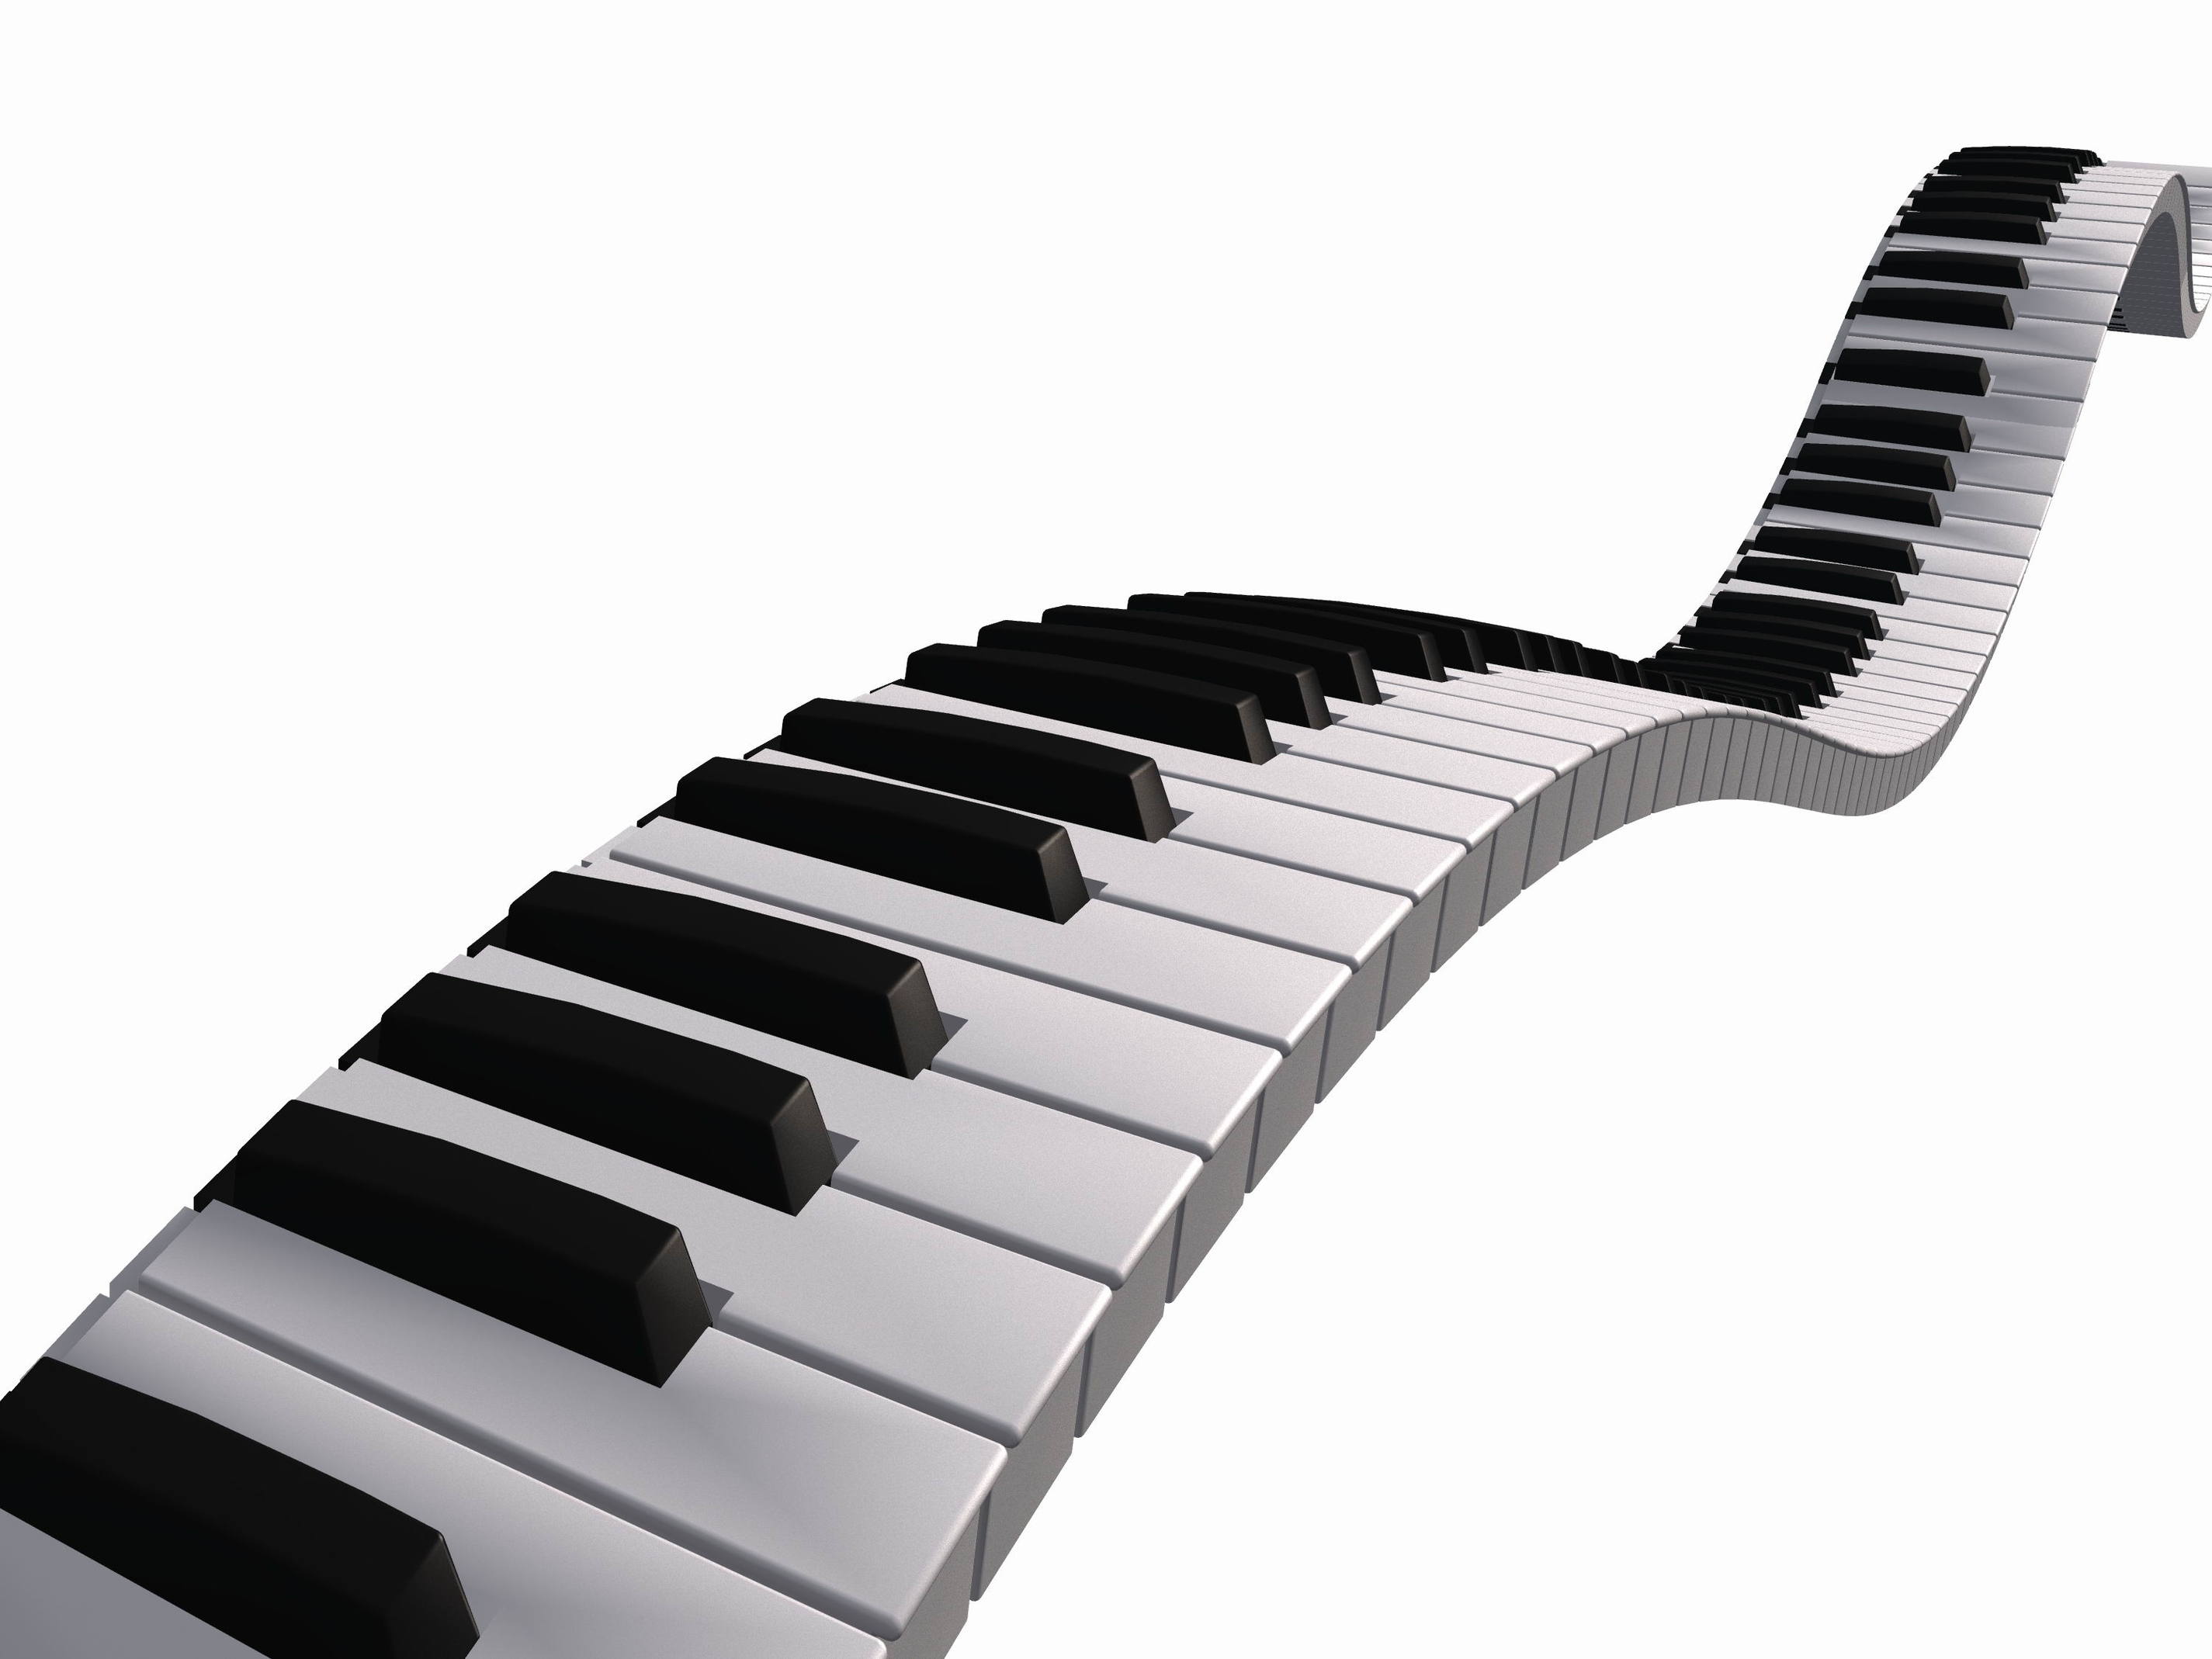 Clip Art Piano Keys Clipart p - Piano Keys Clip Art